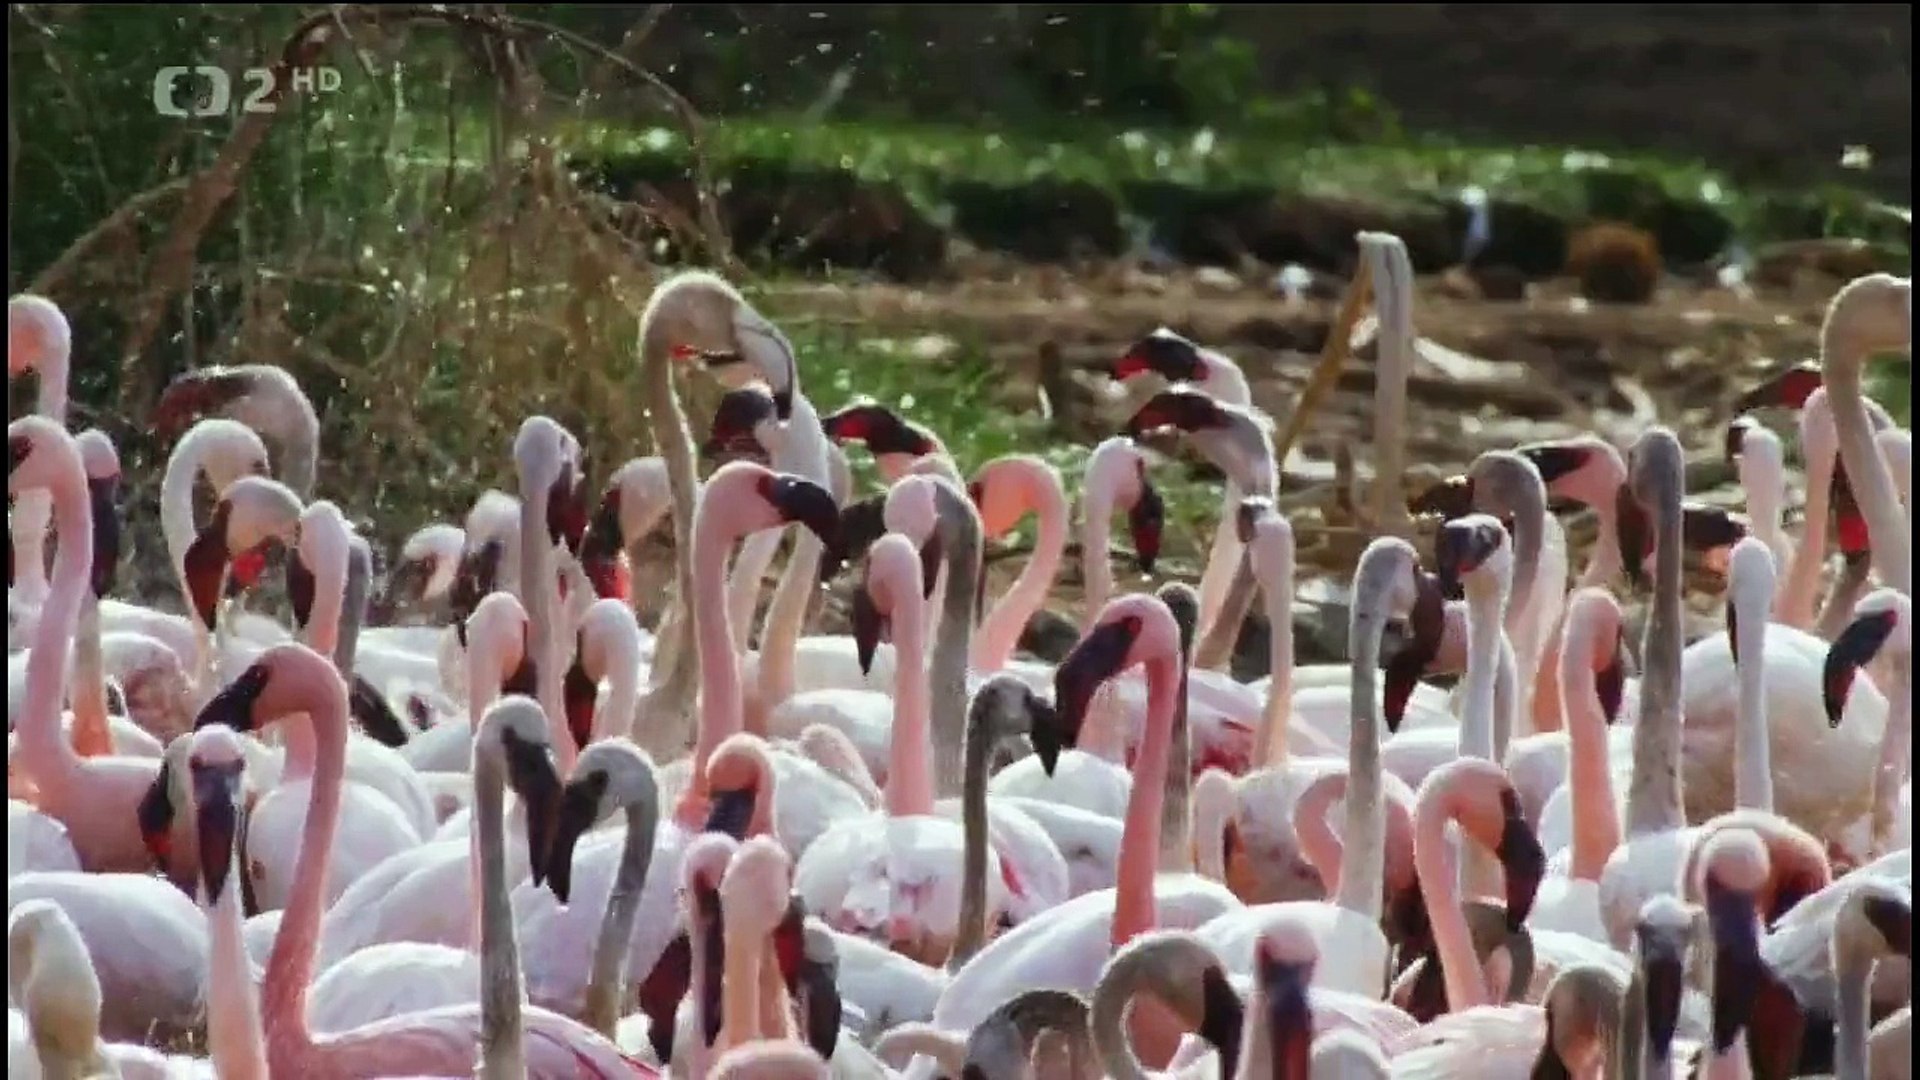 Baboons evolution - Hunting Flamingos